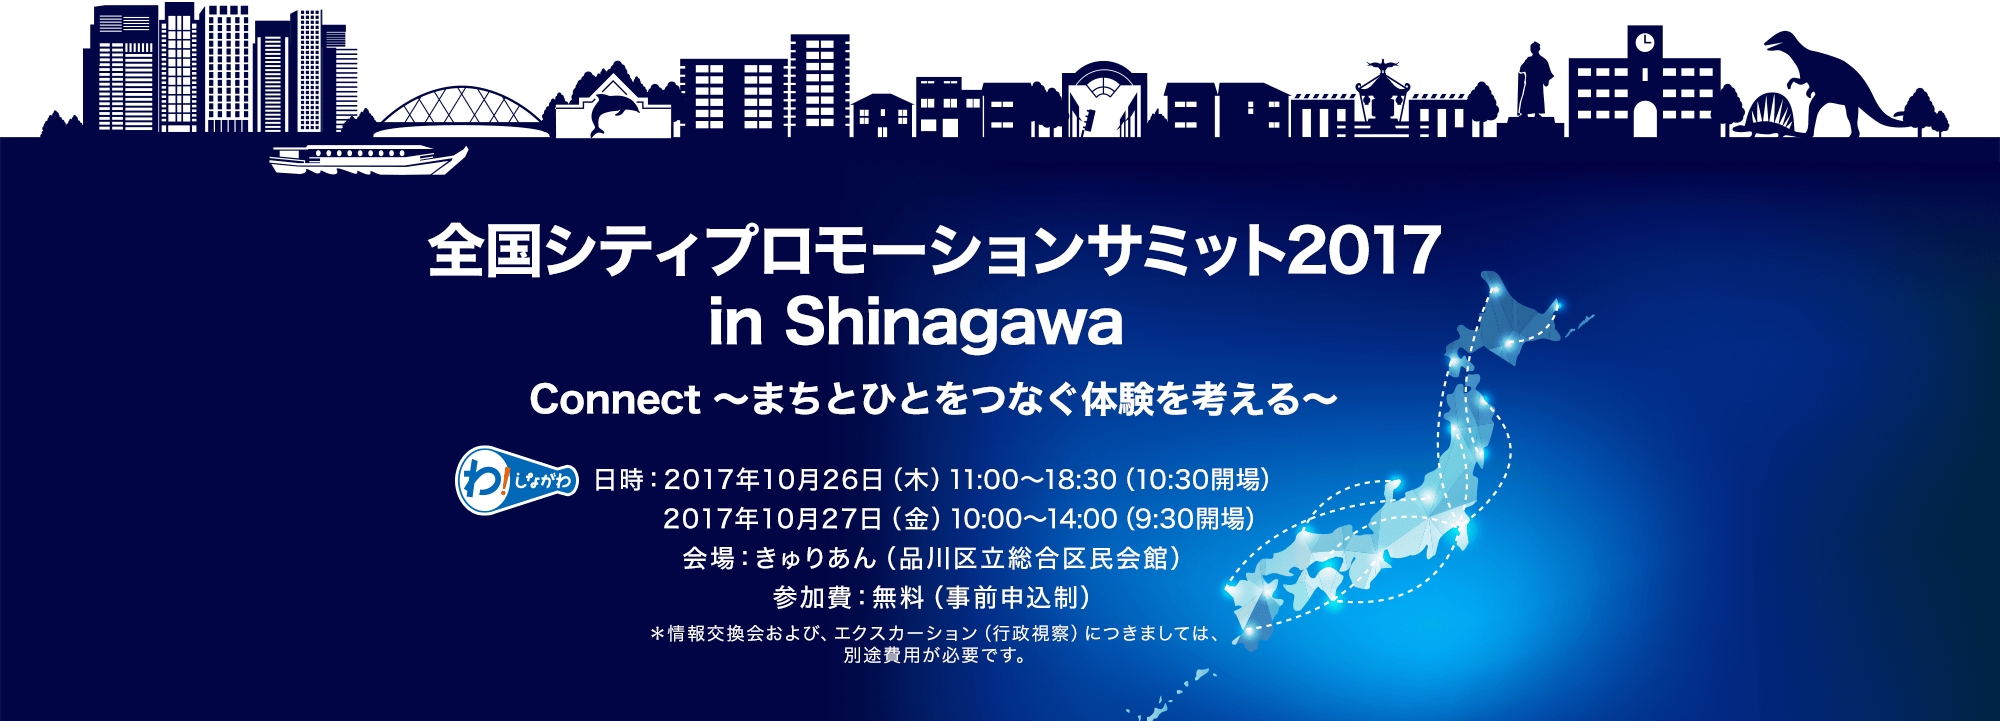 全国シティプロモーションサミット2017 in Shinagawa